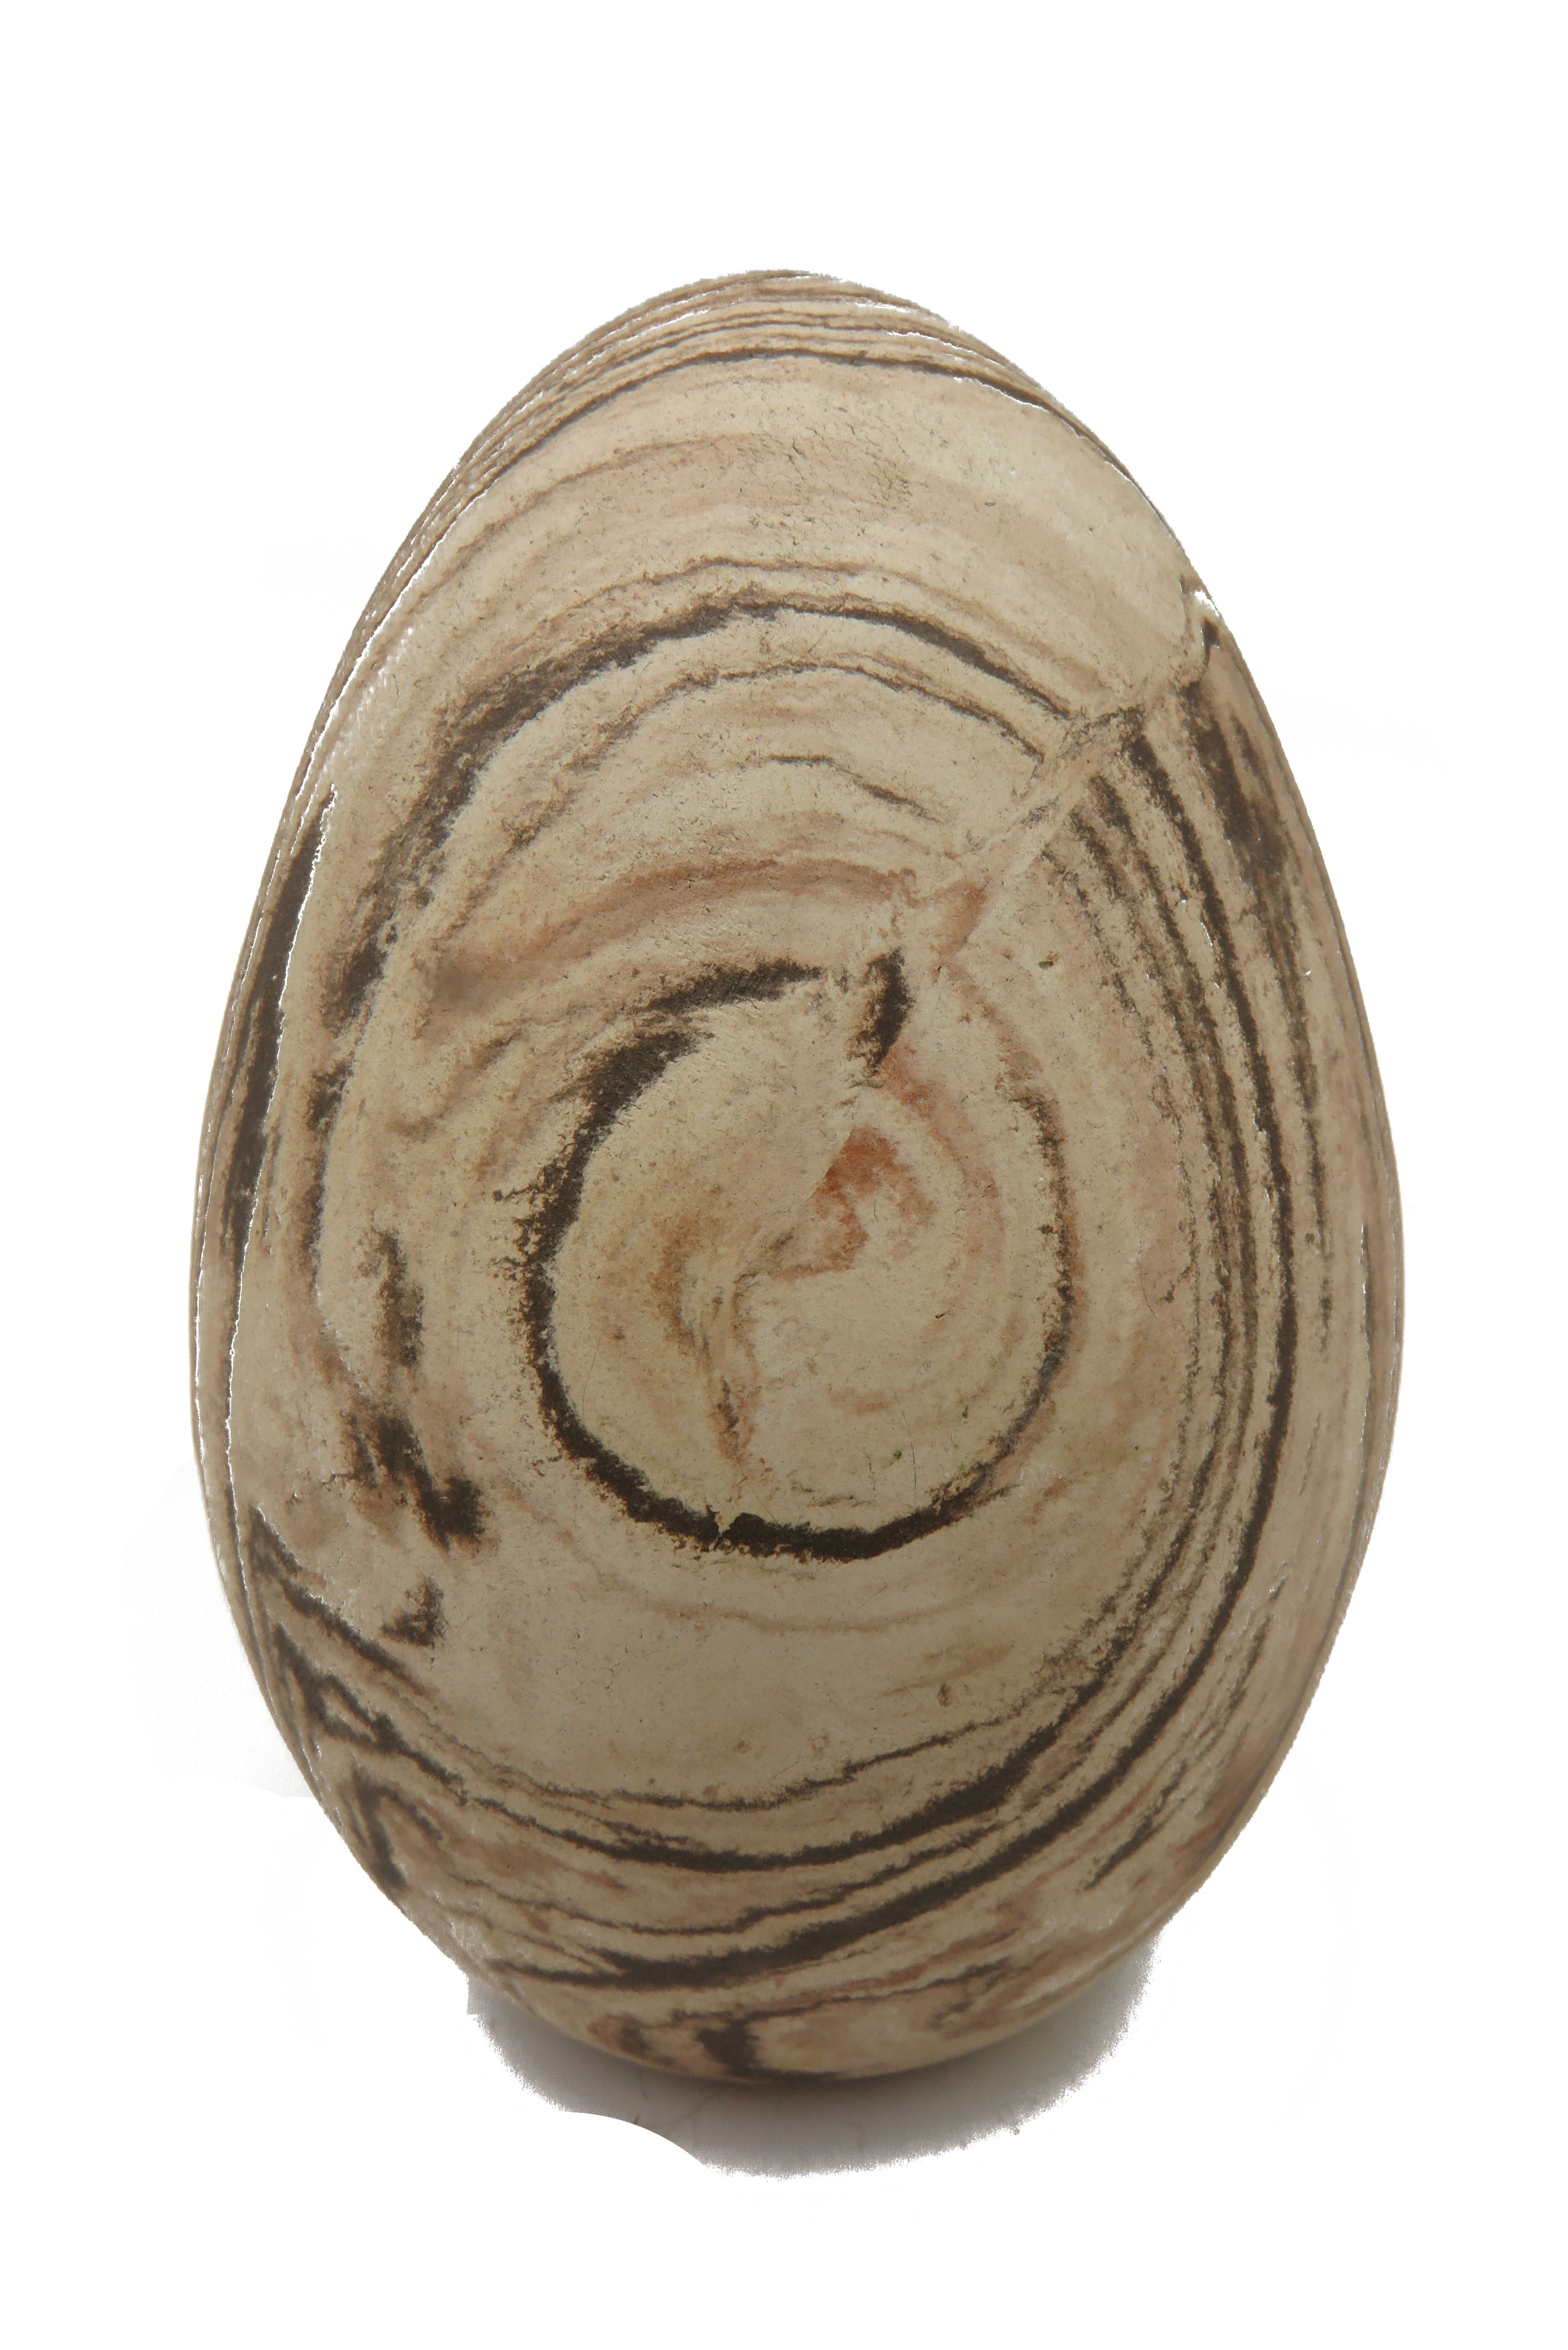  Eier wie aus Stein gehauen/ M 14 cm